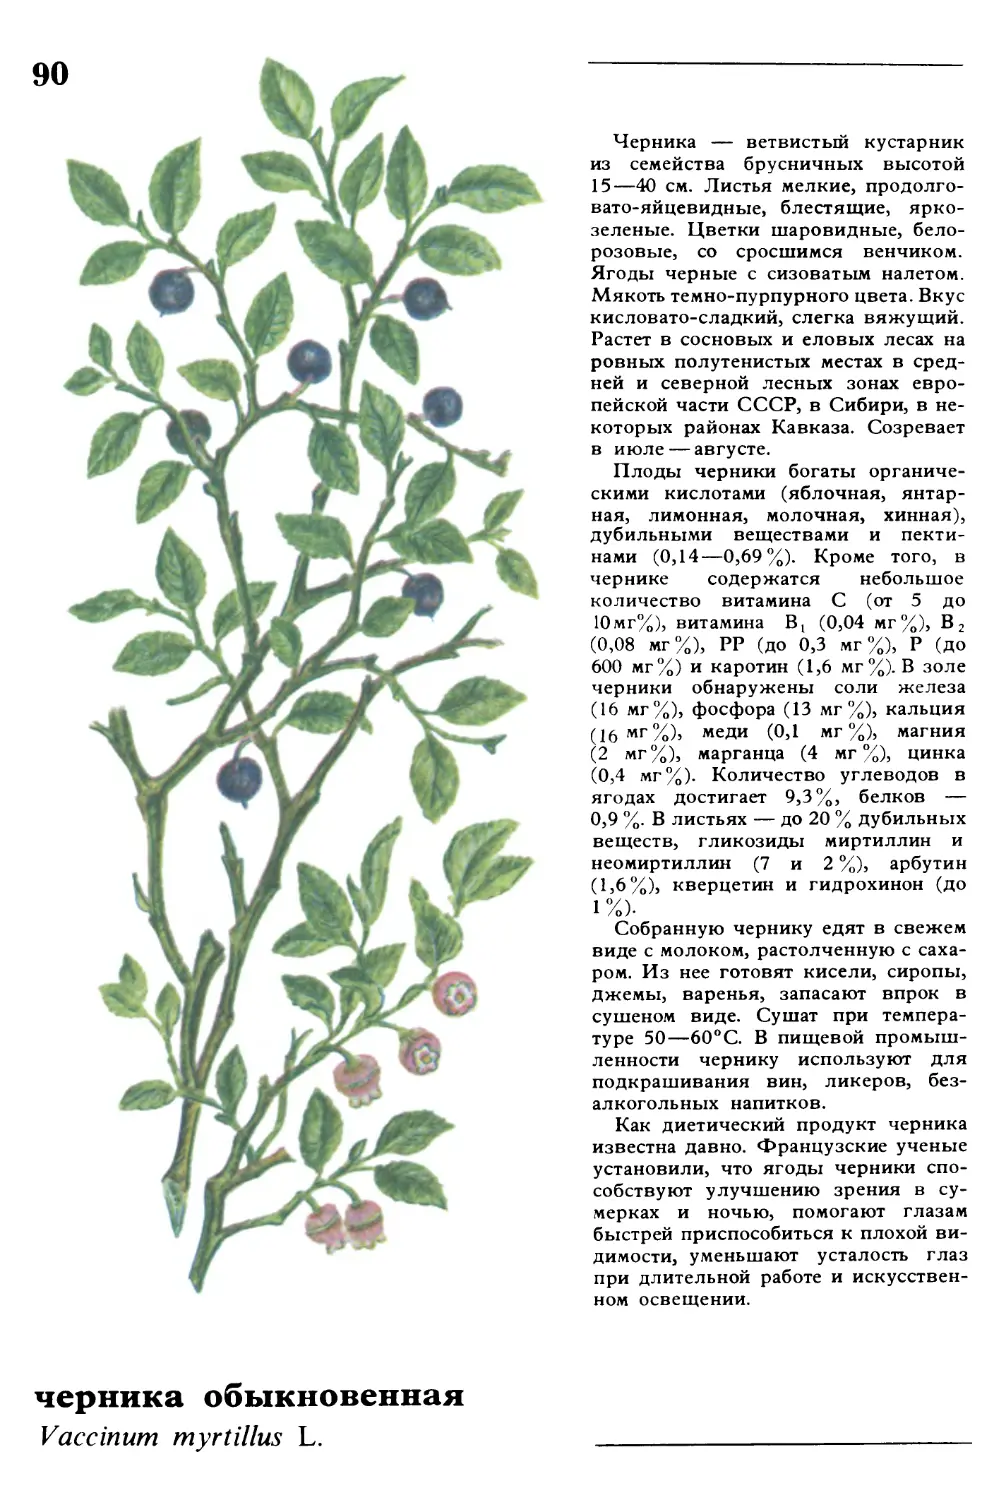 Черника
черника обыкновенная
Vaccinum myrtillus L.